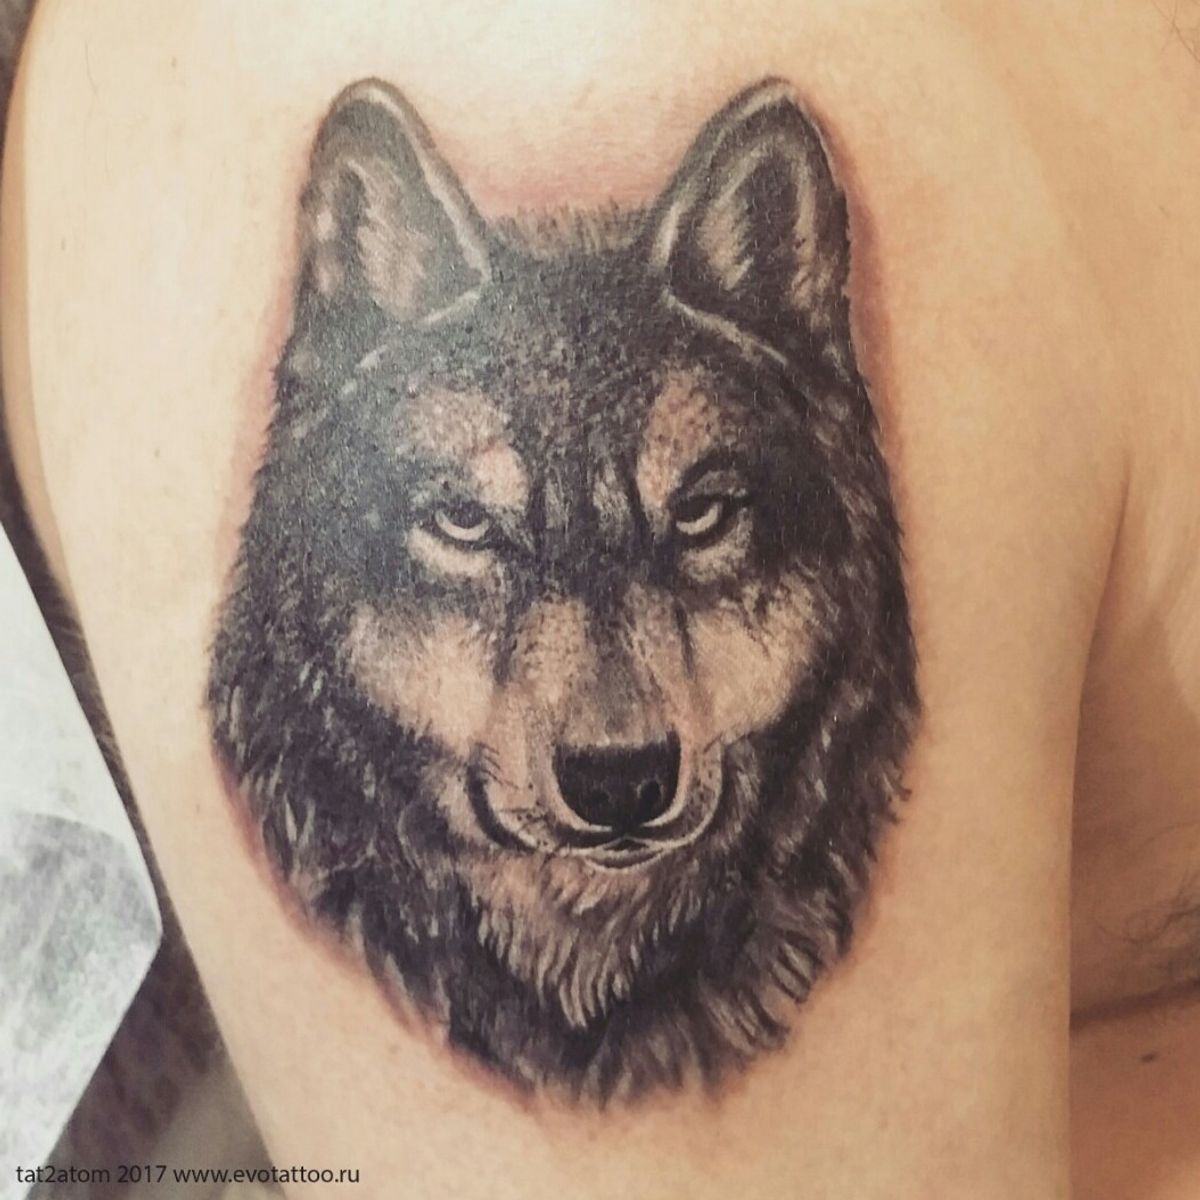 Эскизы тату волка на плече